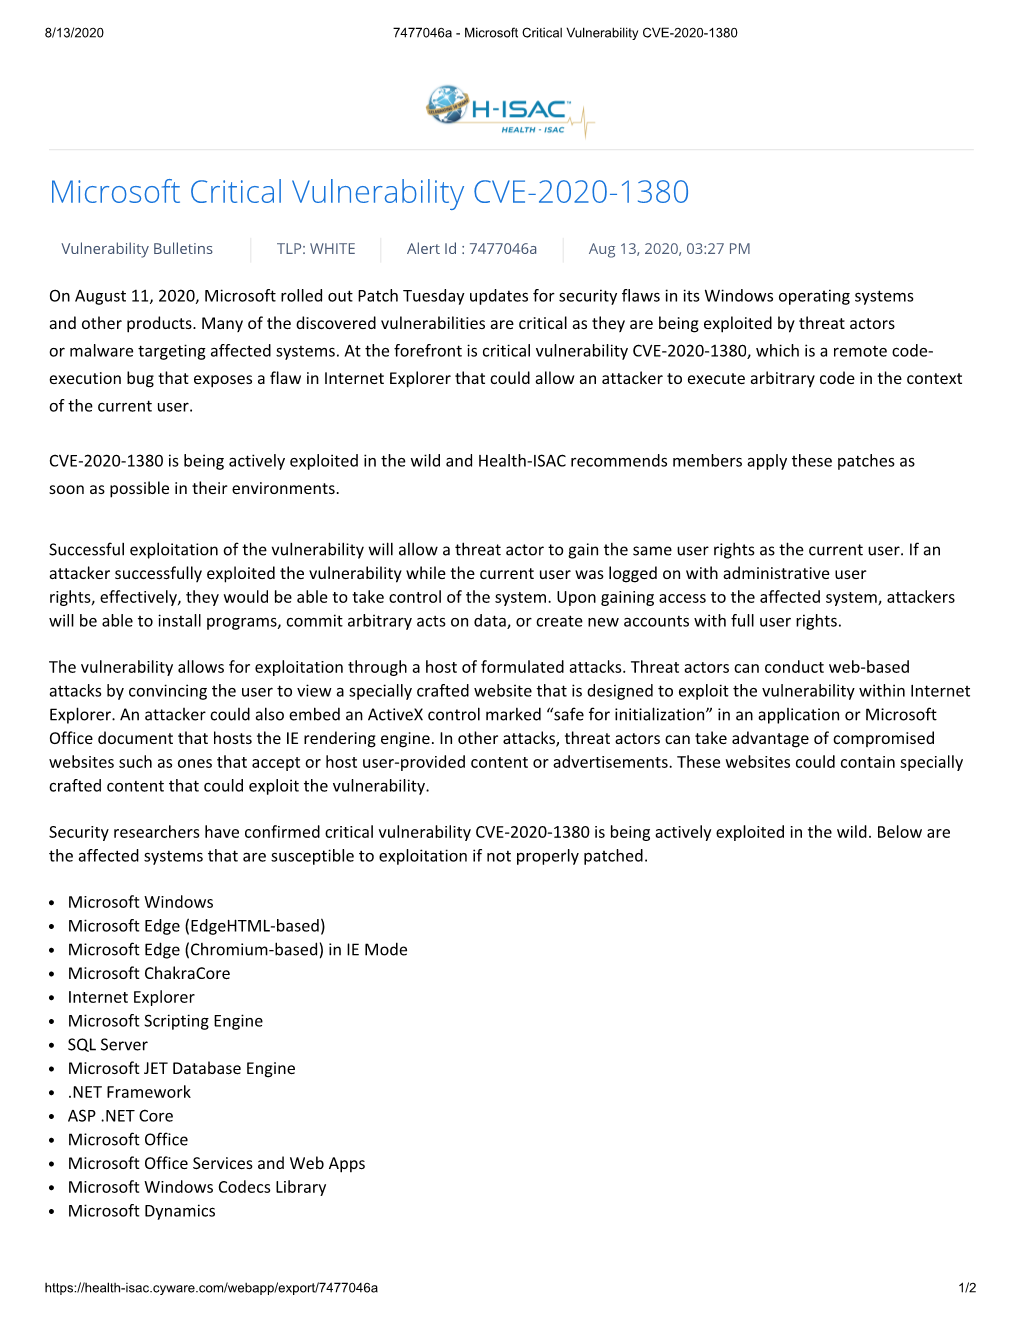 Microsoft Critical Vulnerability CVE-2020-1380